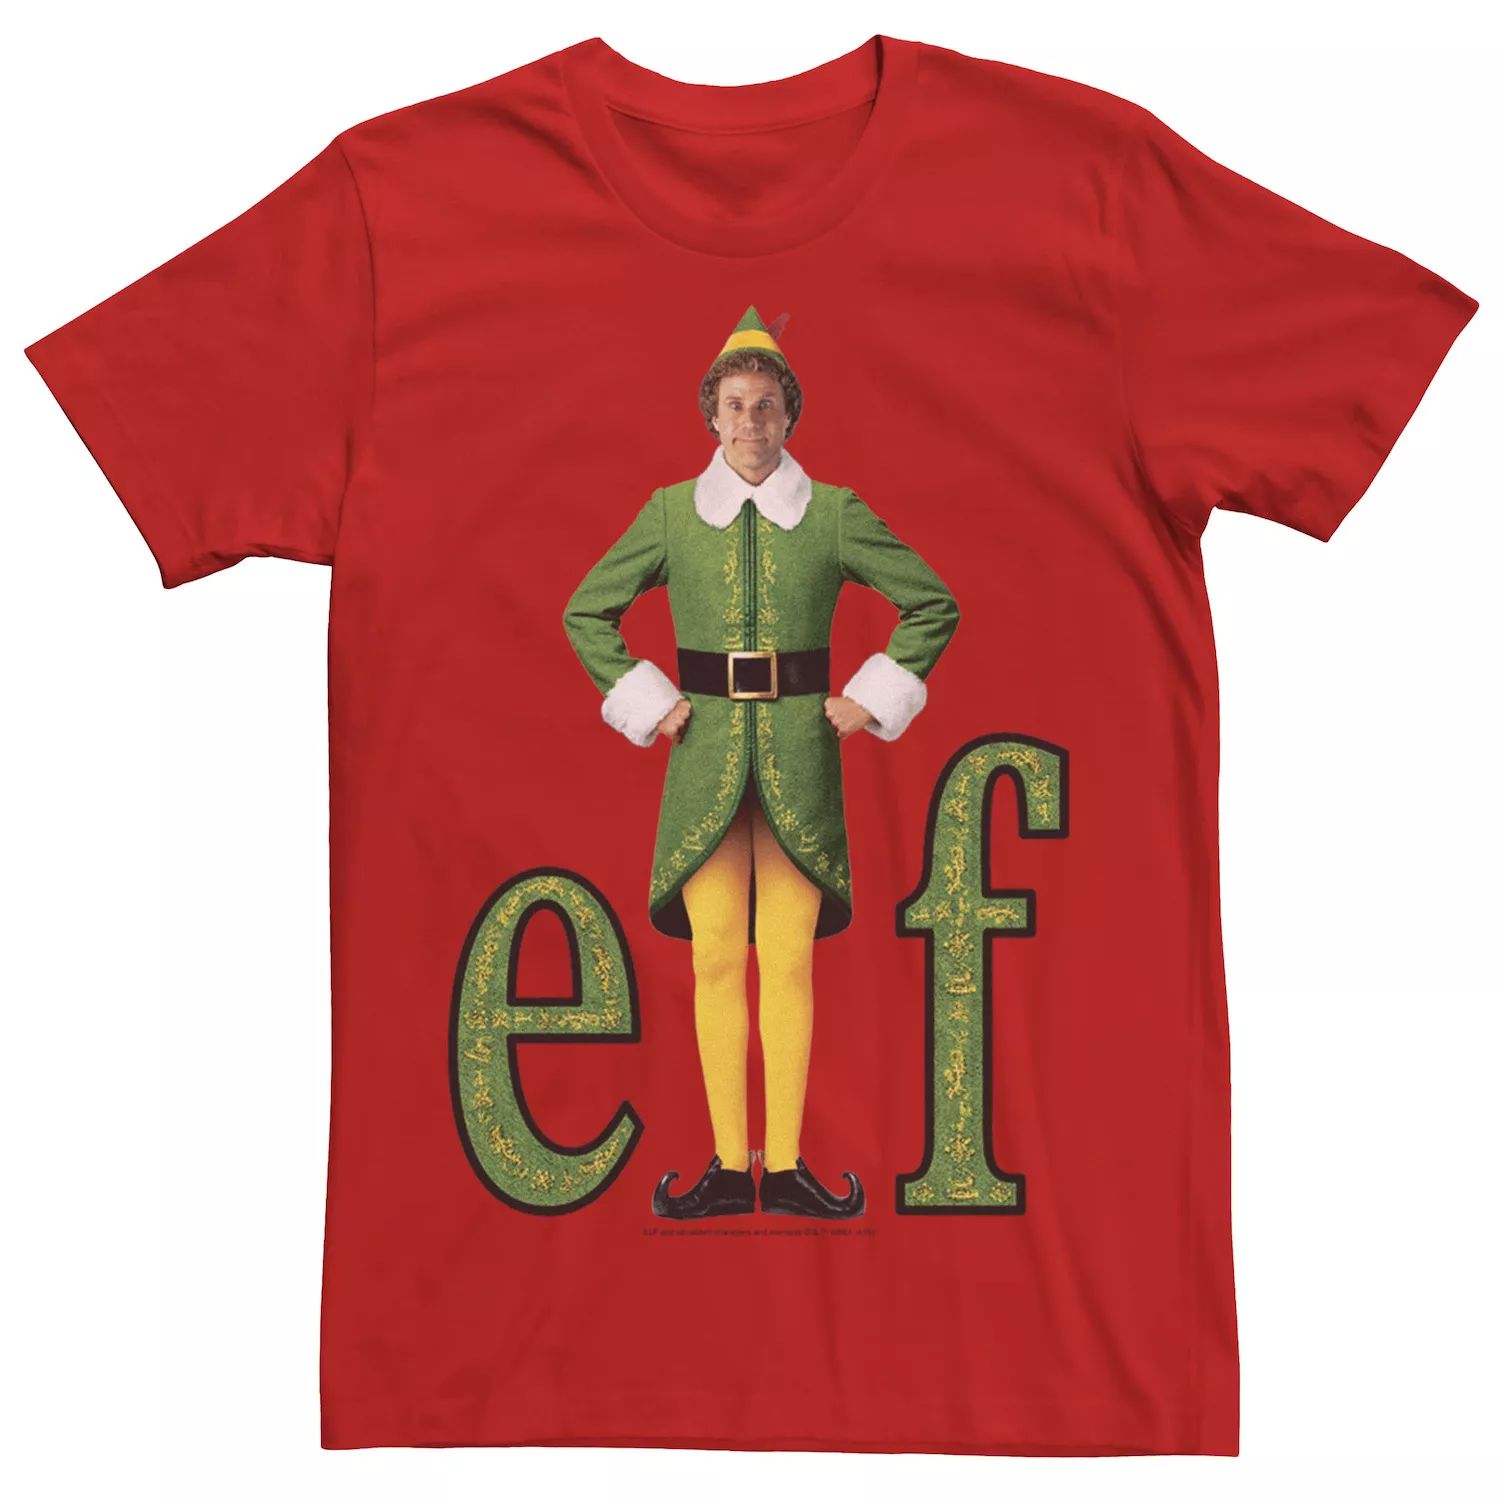 цена Мужская футболка Elf Buddy Classic Movie с логотипом Licensed Character